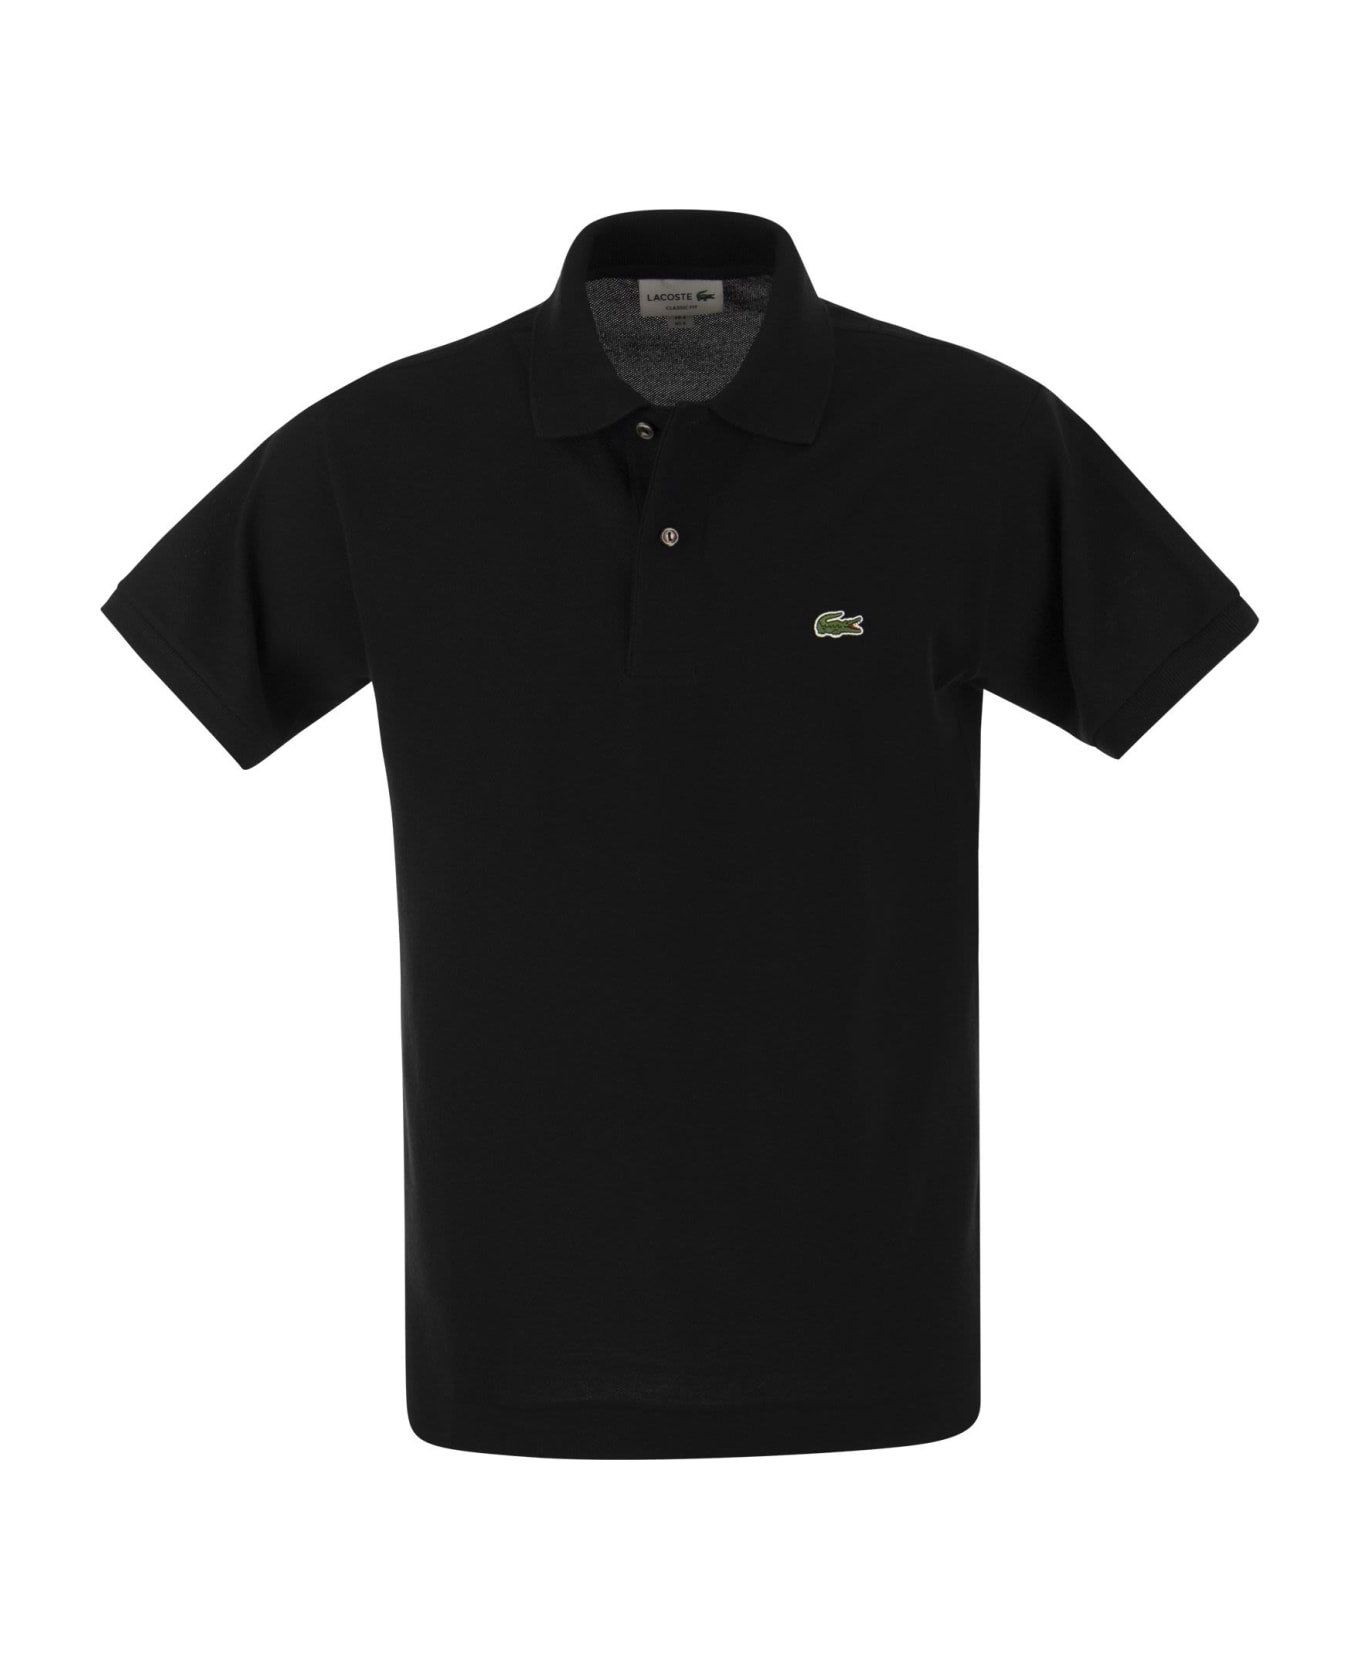 Lacoste Classic Fit Cotton Pique Polo The Shirt - Black